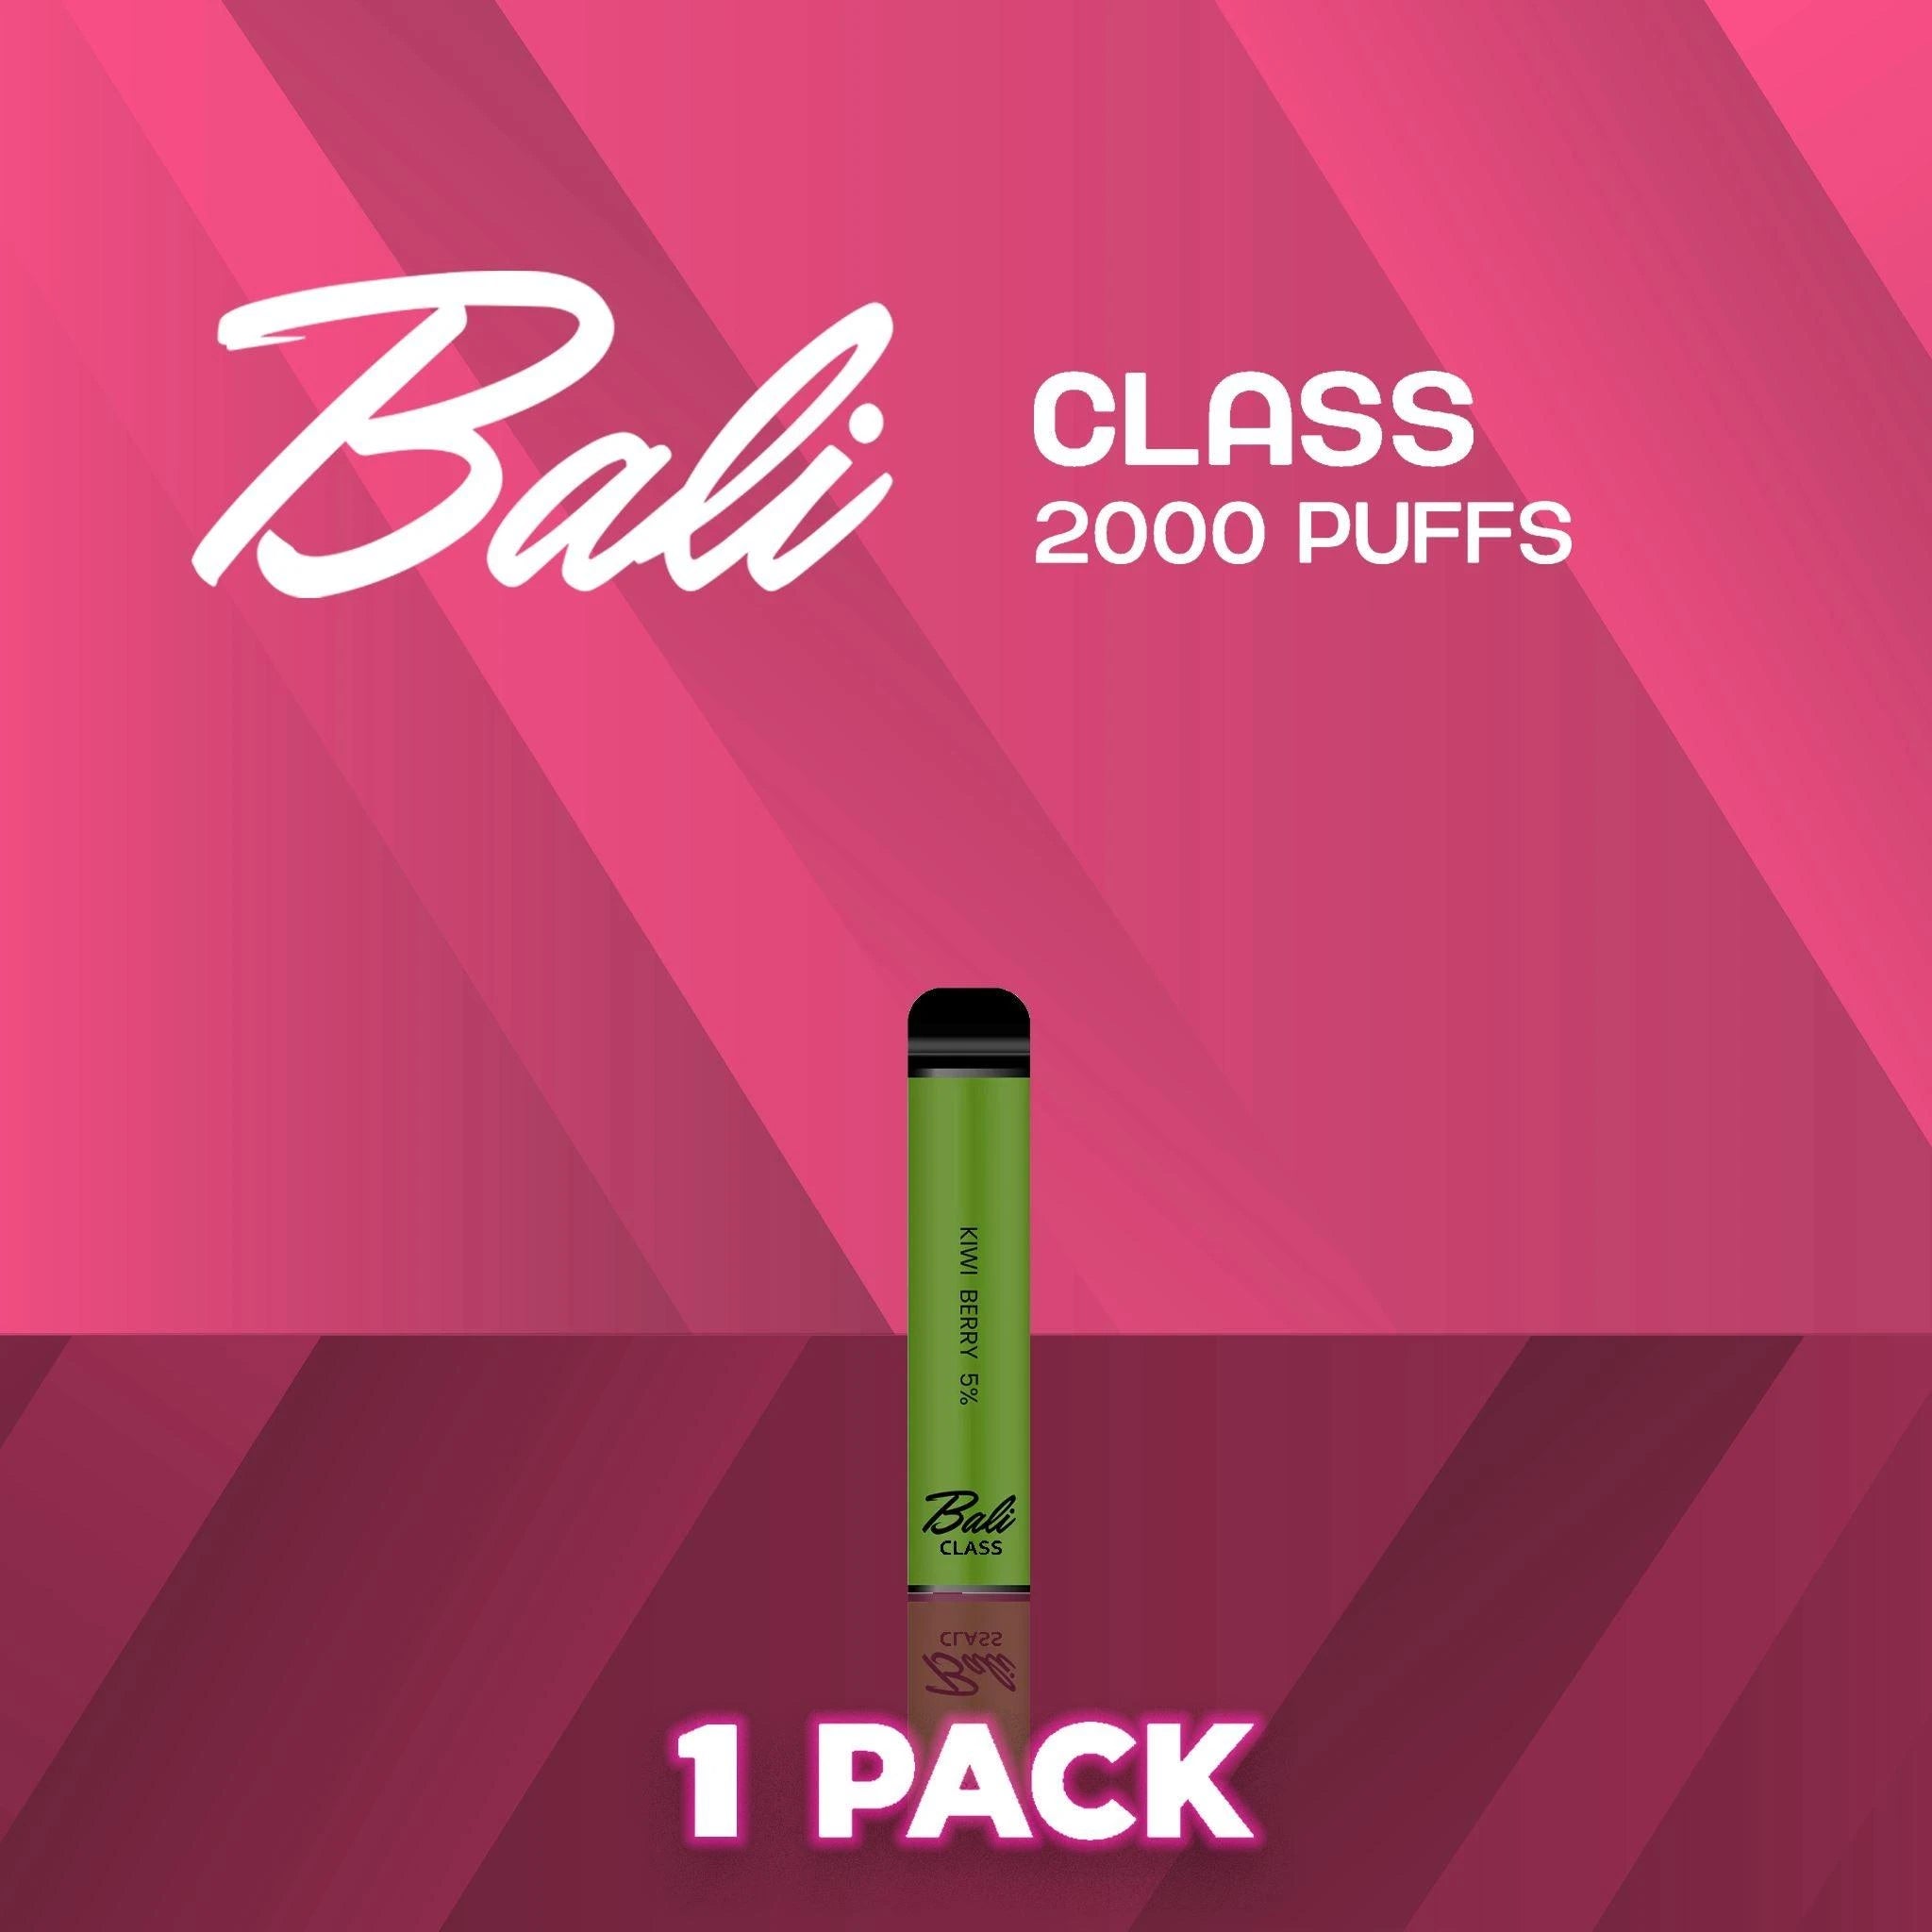 Bali Class Disposable Vape Device 2000 Puffs - 1 Pack